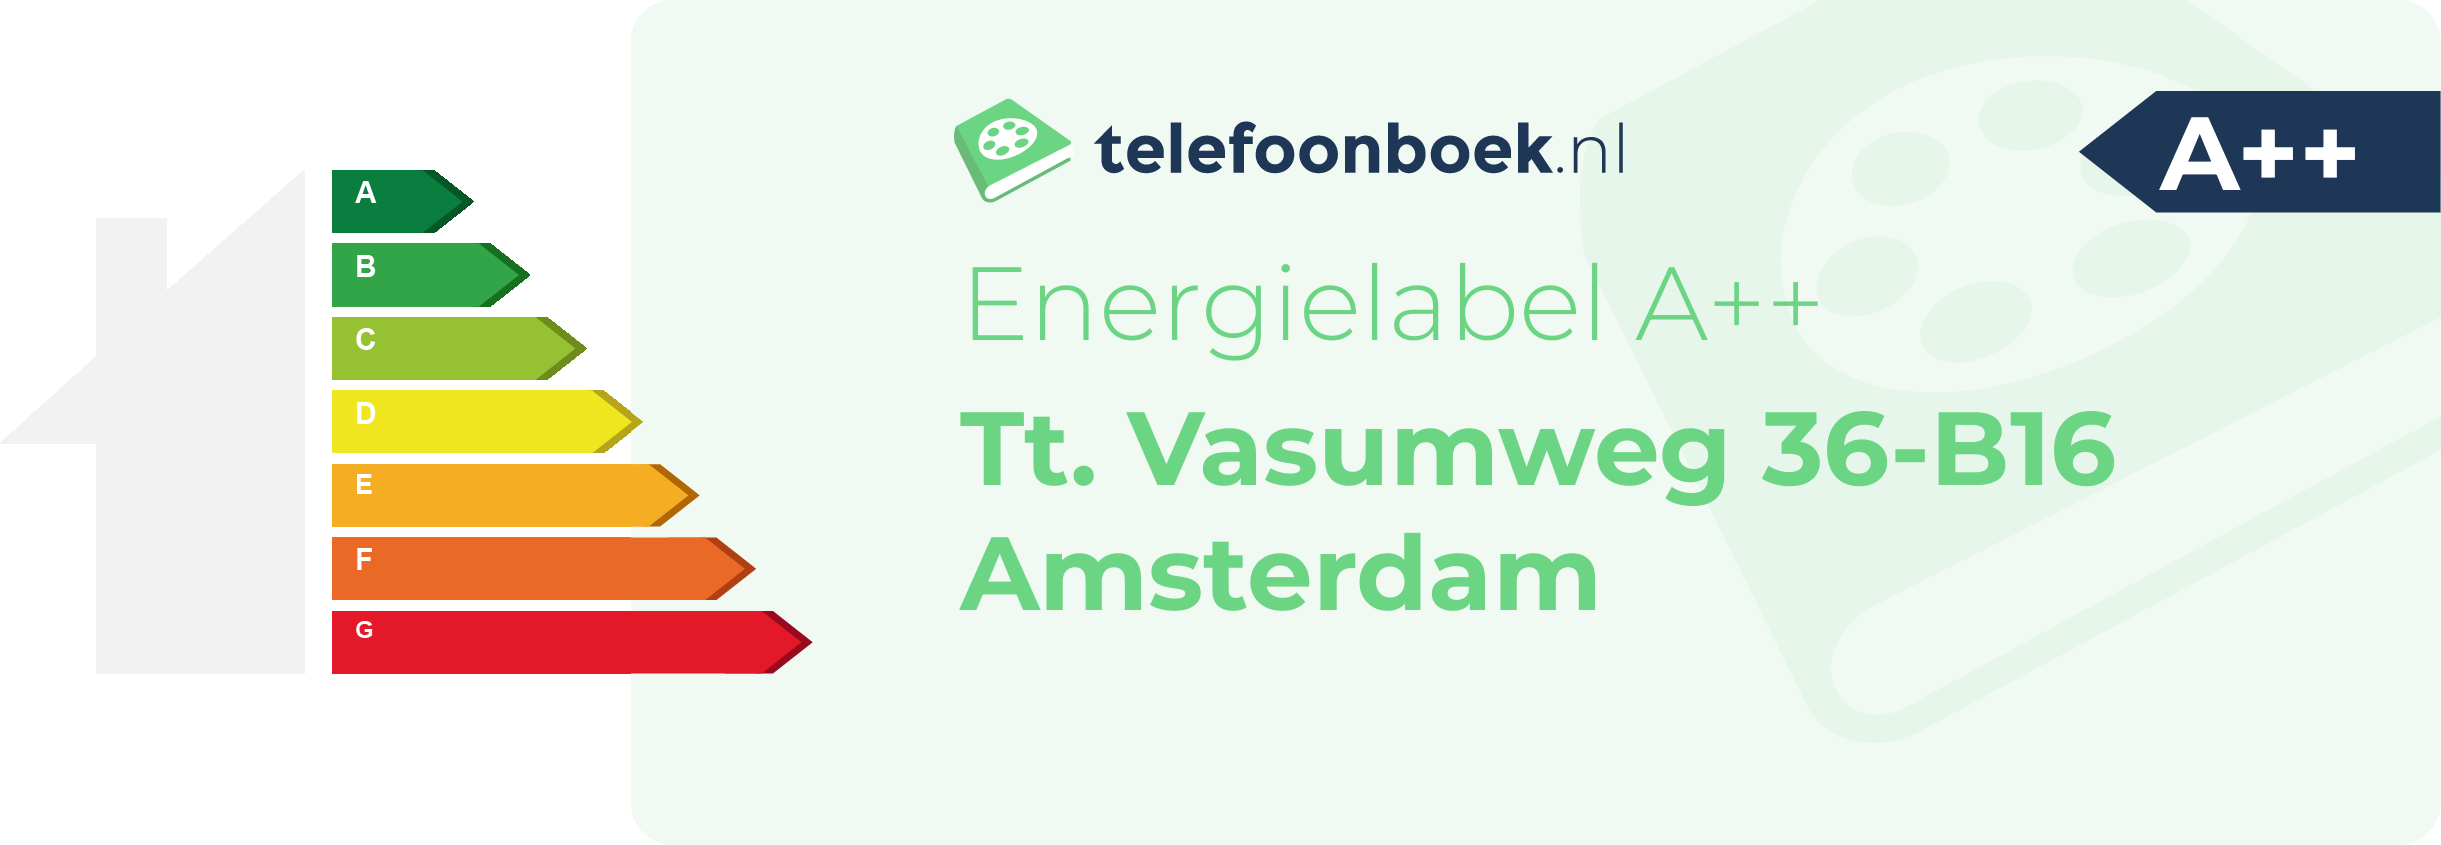 Energielabel Tt. Vasumweg 36-B16 Amsterdam